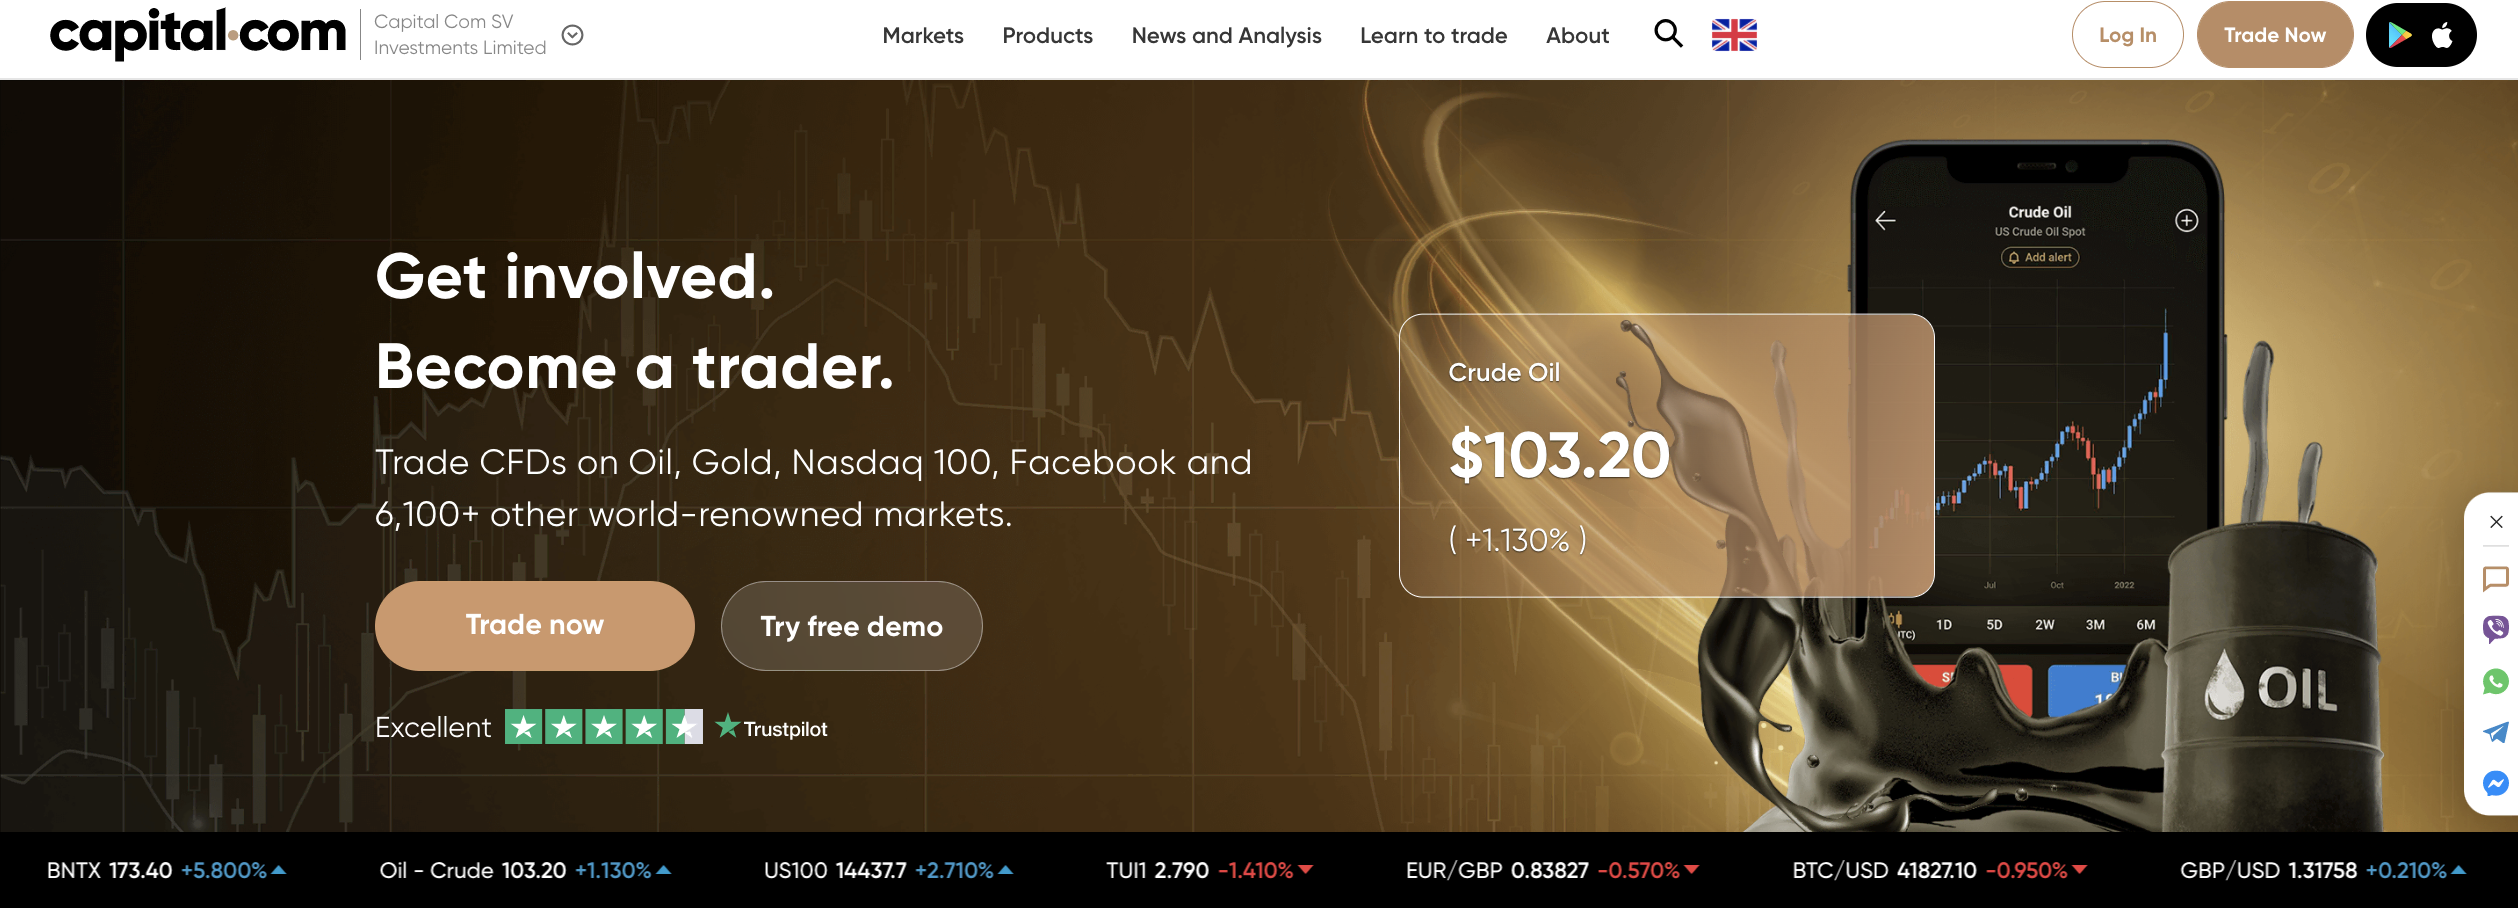 Az Capital.com forex bróker hivatalos weboldala